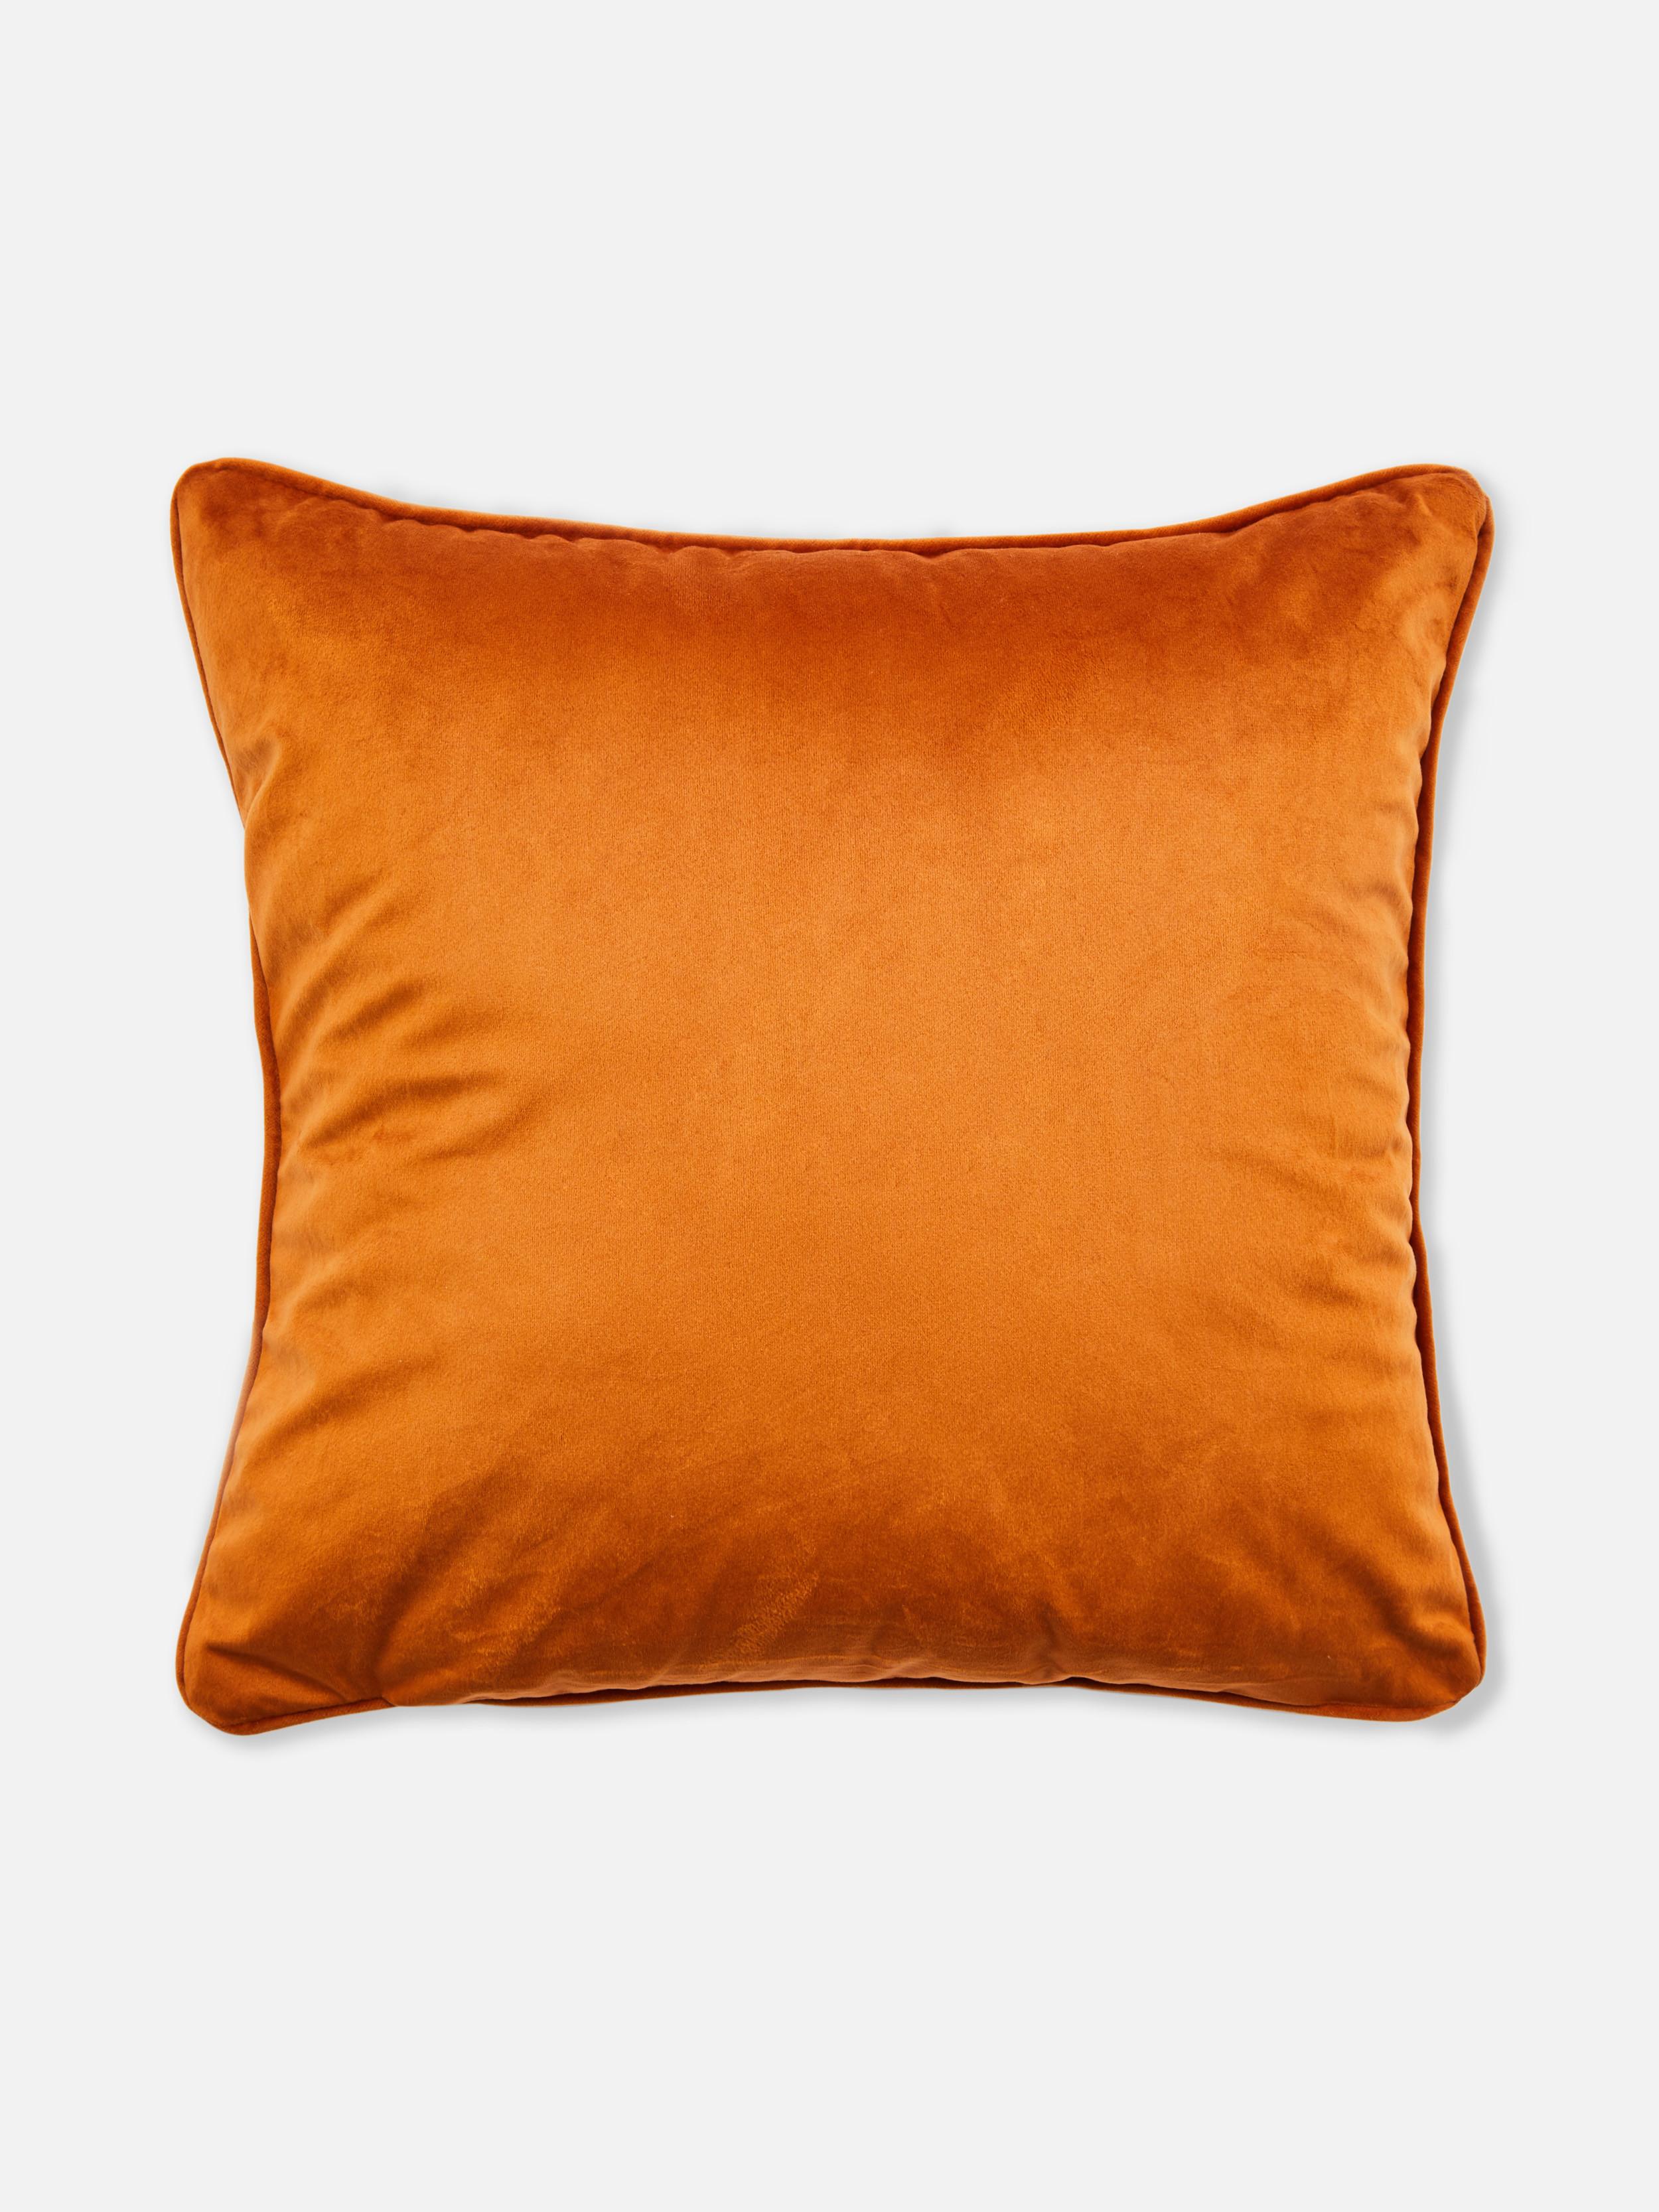 Velvet Square Cushion Cover Orange